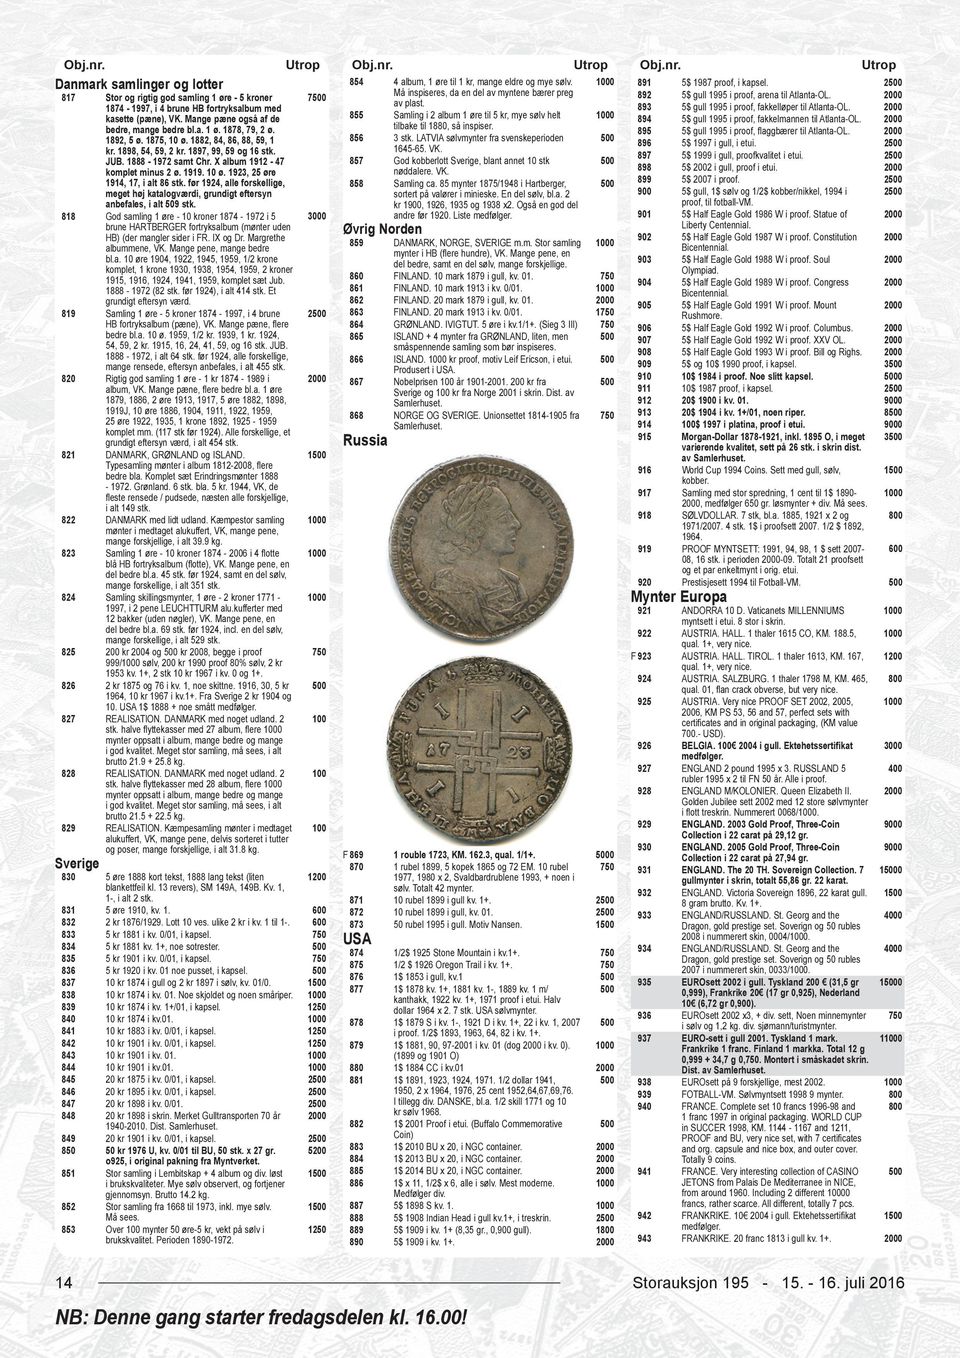 1874-1997, i 4 brune HB fortryksalbum med 893 5$ gull 1995 i proof, fakkelløper til Atlanta-OL. 0 kasette (pæne), VK.